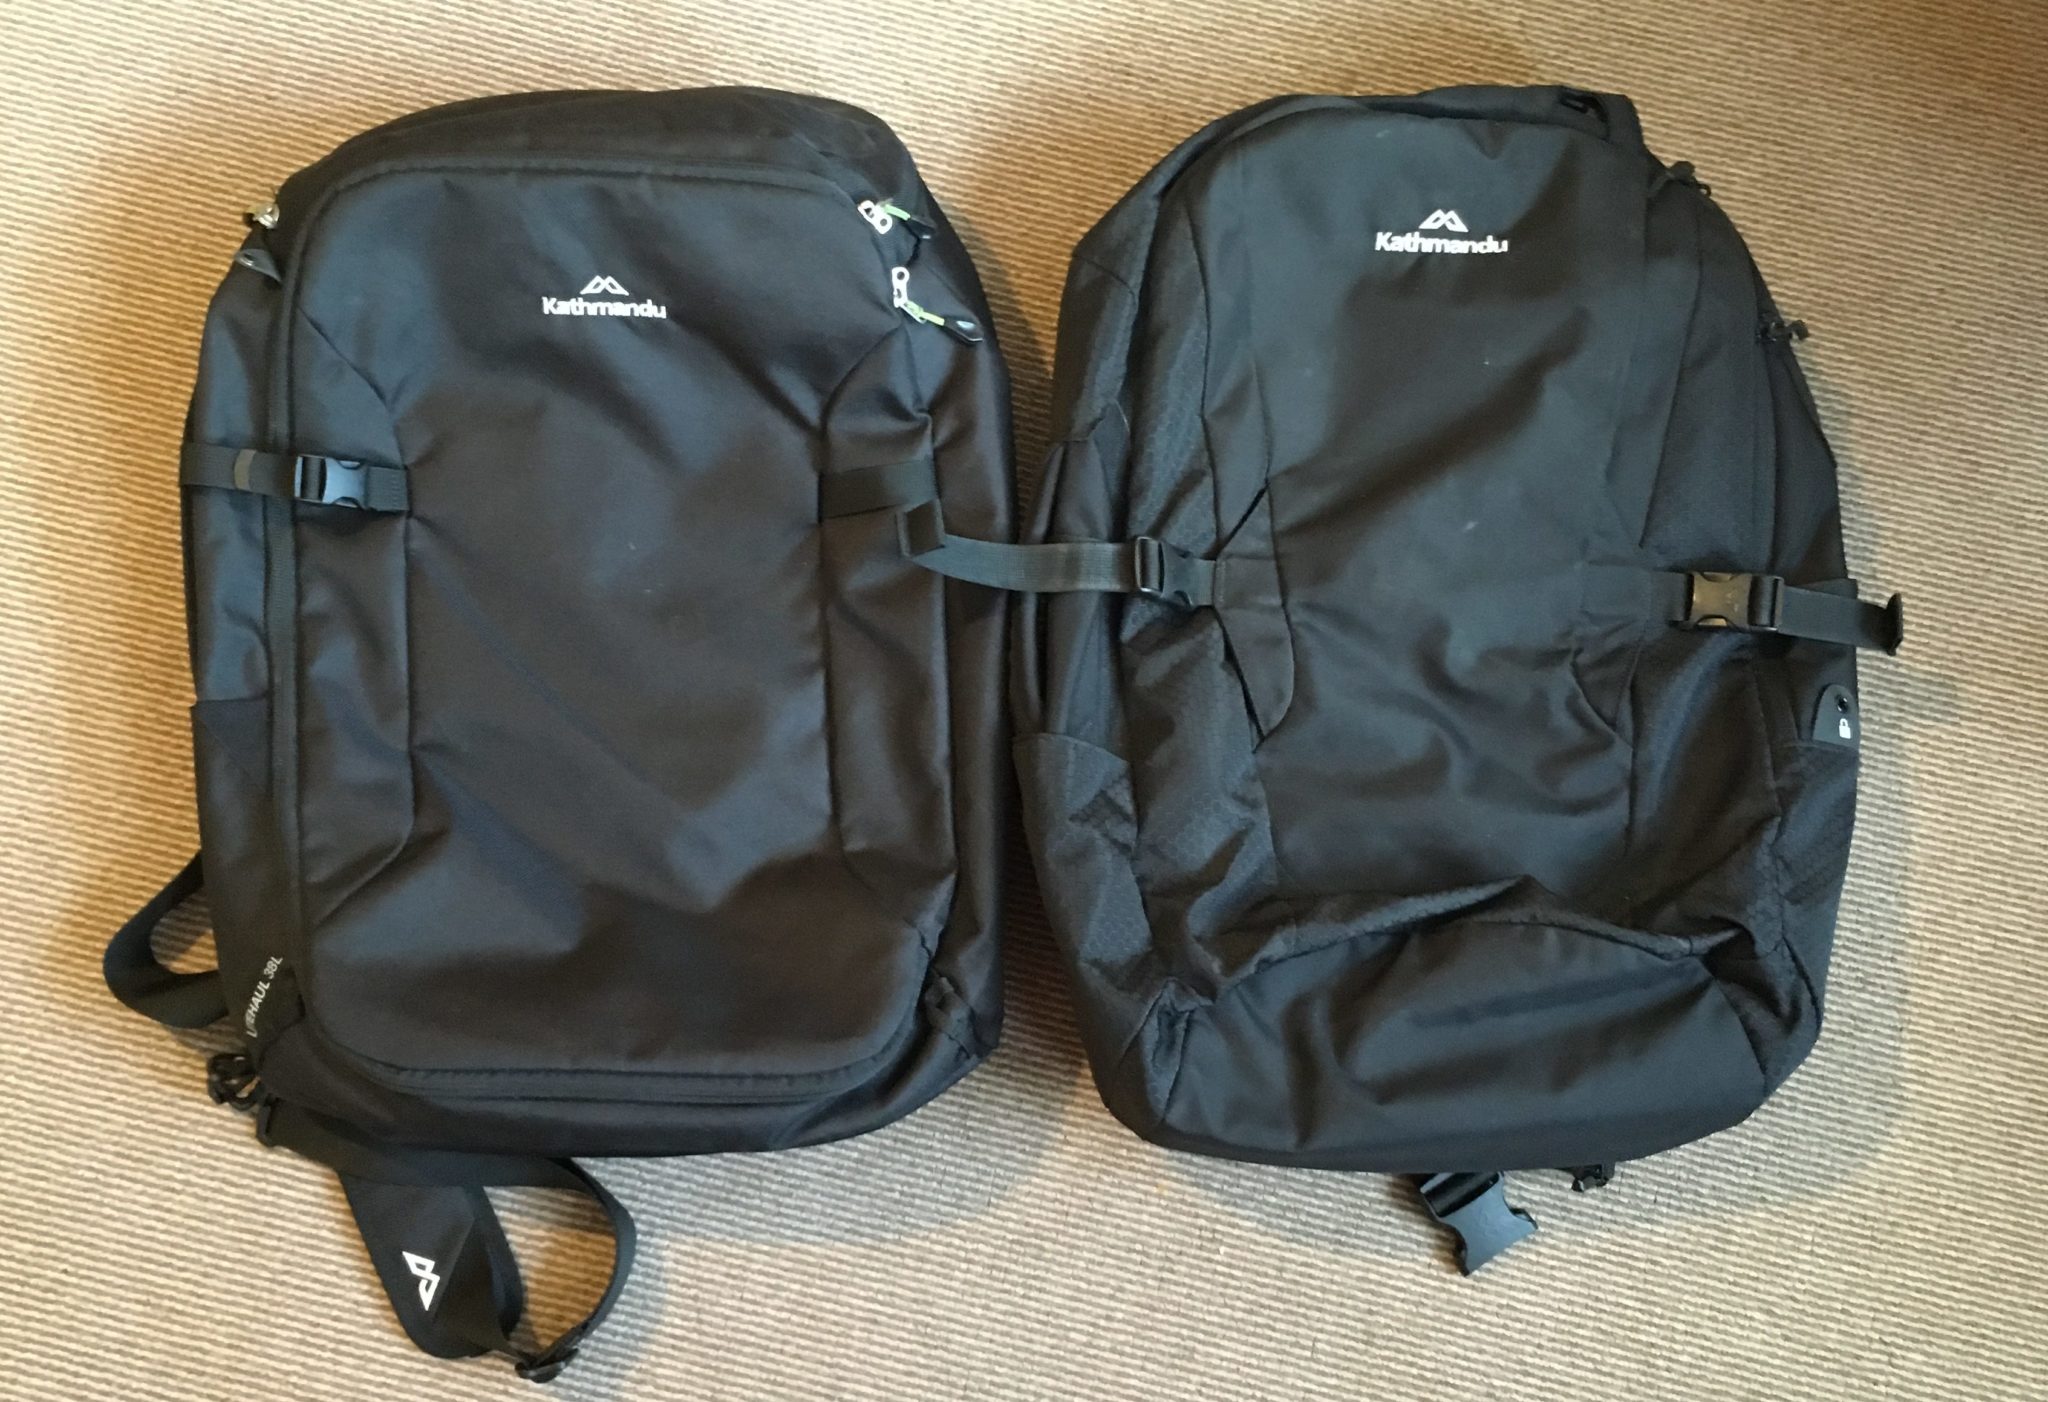 2 black backpacks Kathmandu Litehaul 38L (2018) on the left and Kathmandu Litehaul 38L V3 (2017) on the right